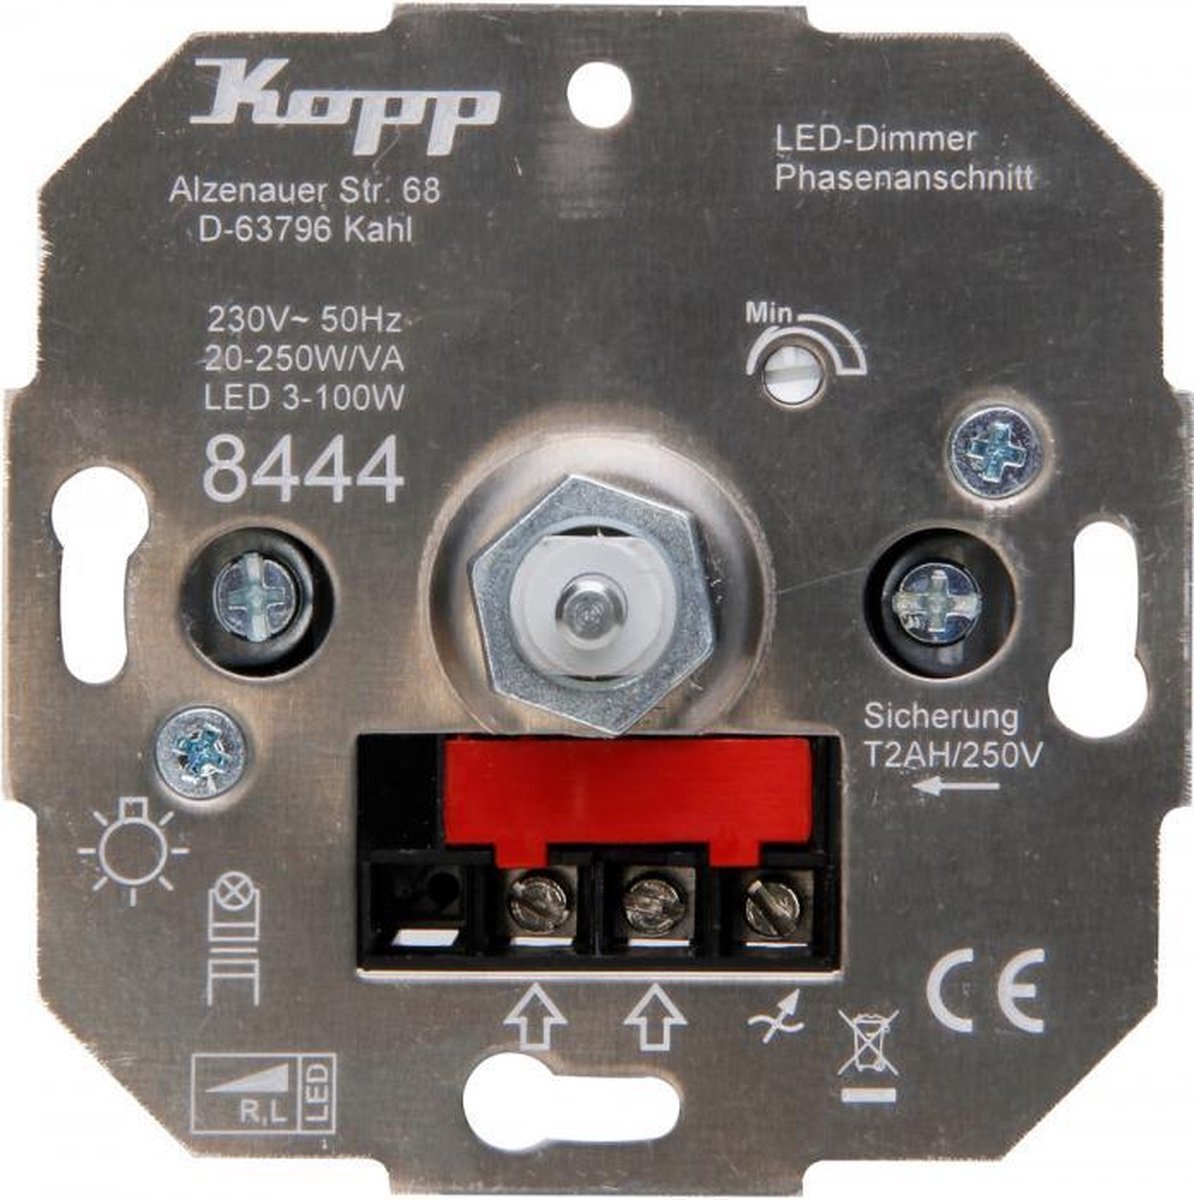 Kopp dimmer 230V Led lampen 3 - 100W Model 8444